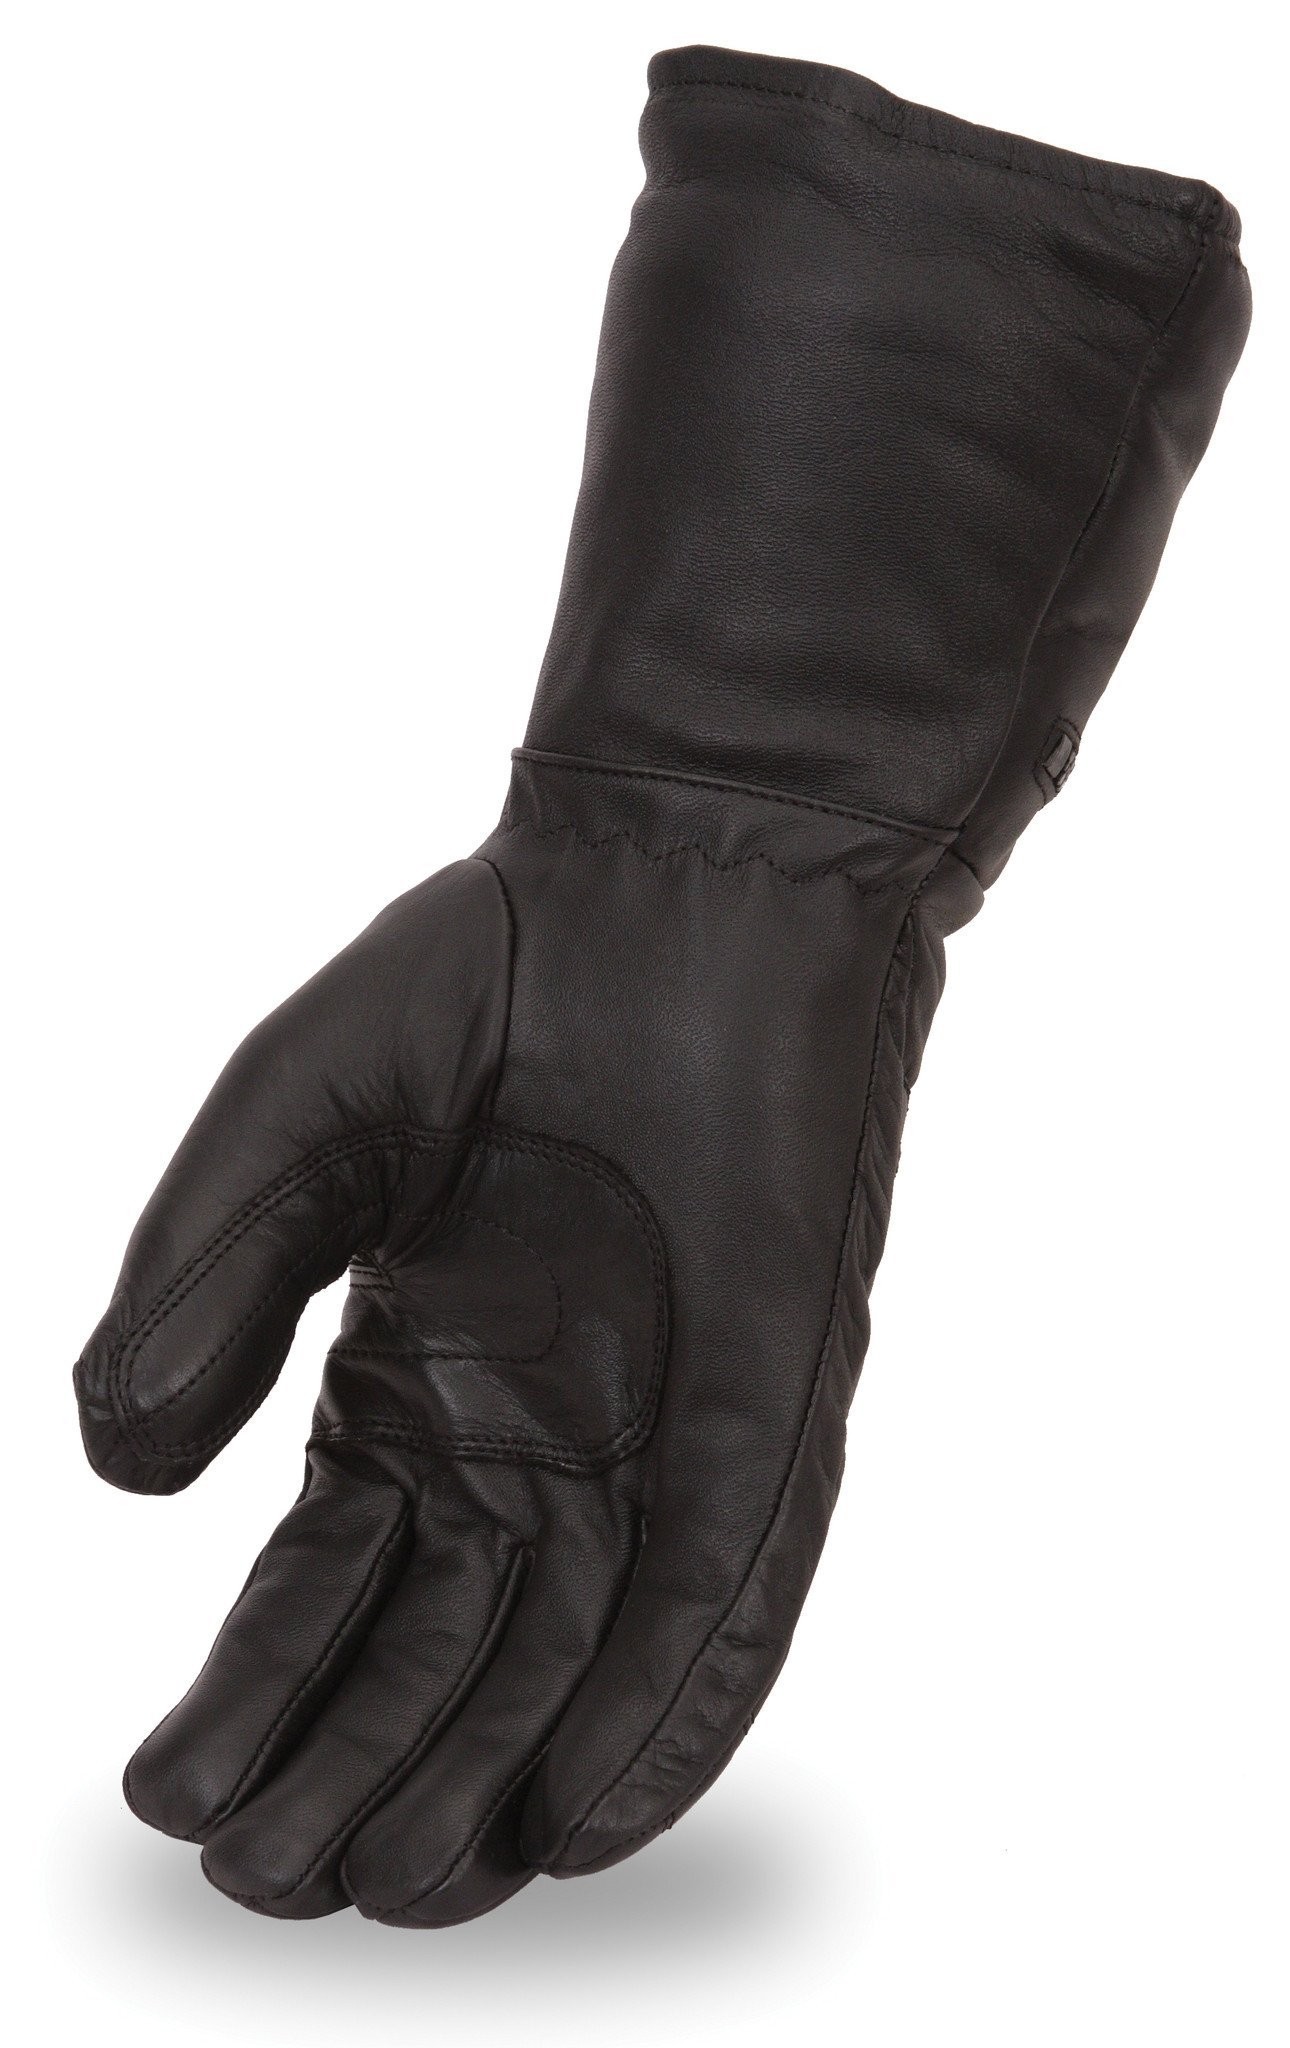 Men's Cold Weather Gauntlet Leather Motorcycle Gloves - SKU FI120GL-FM